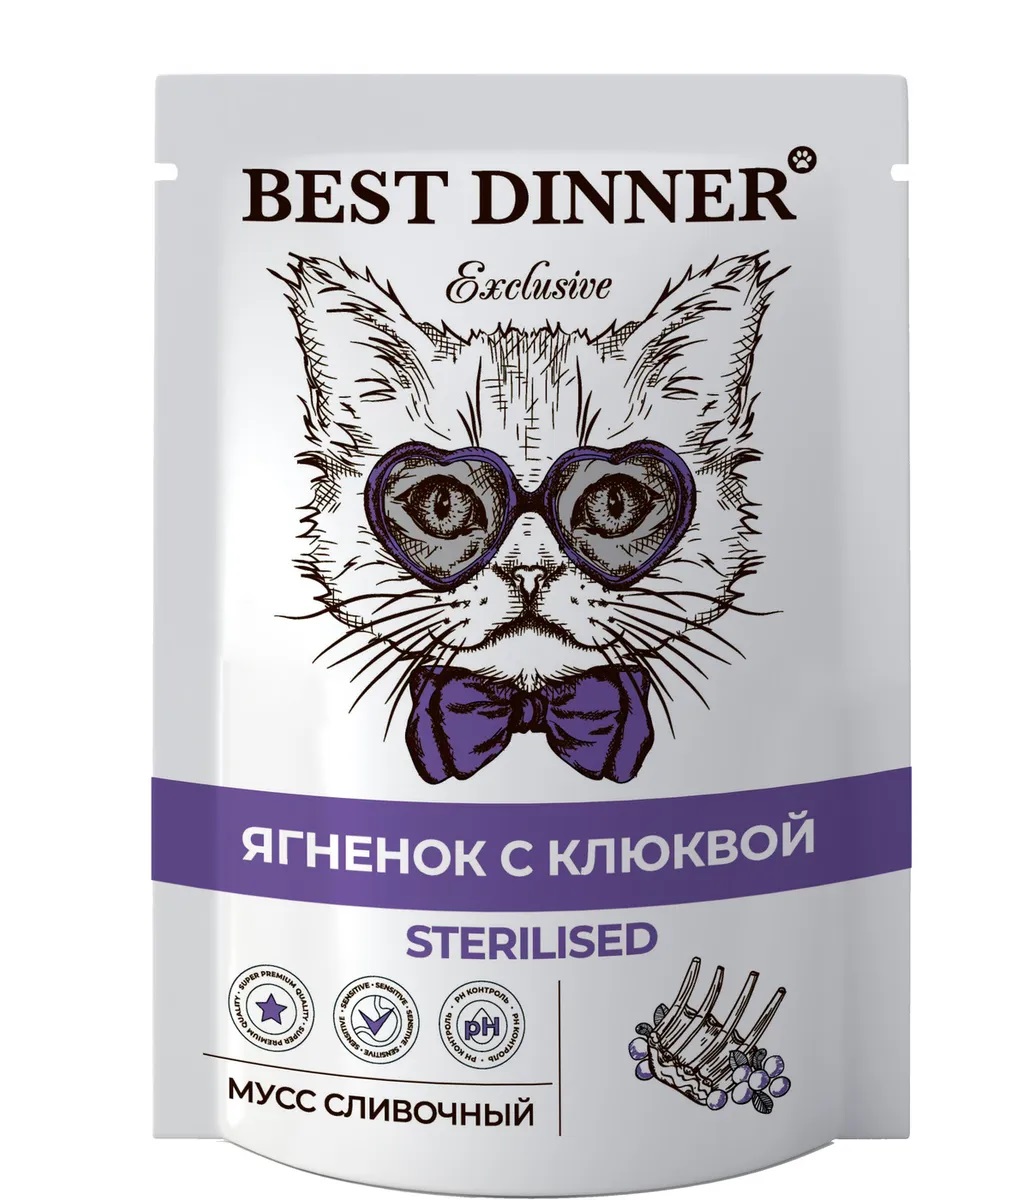 Корм для стерилизованных кошек Best dinner exclusive sterilised мусс сливочный 85 г пауч ягненок с клюквой